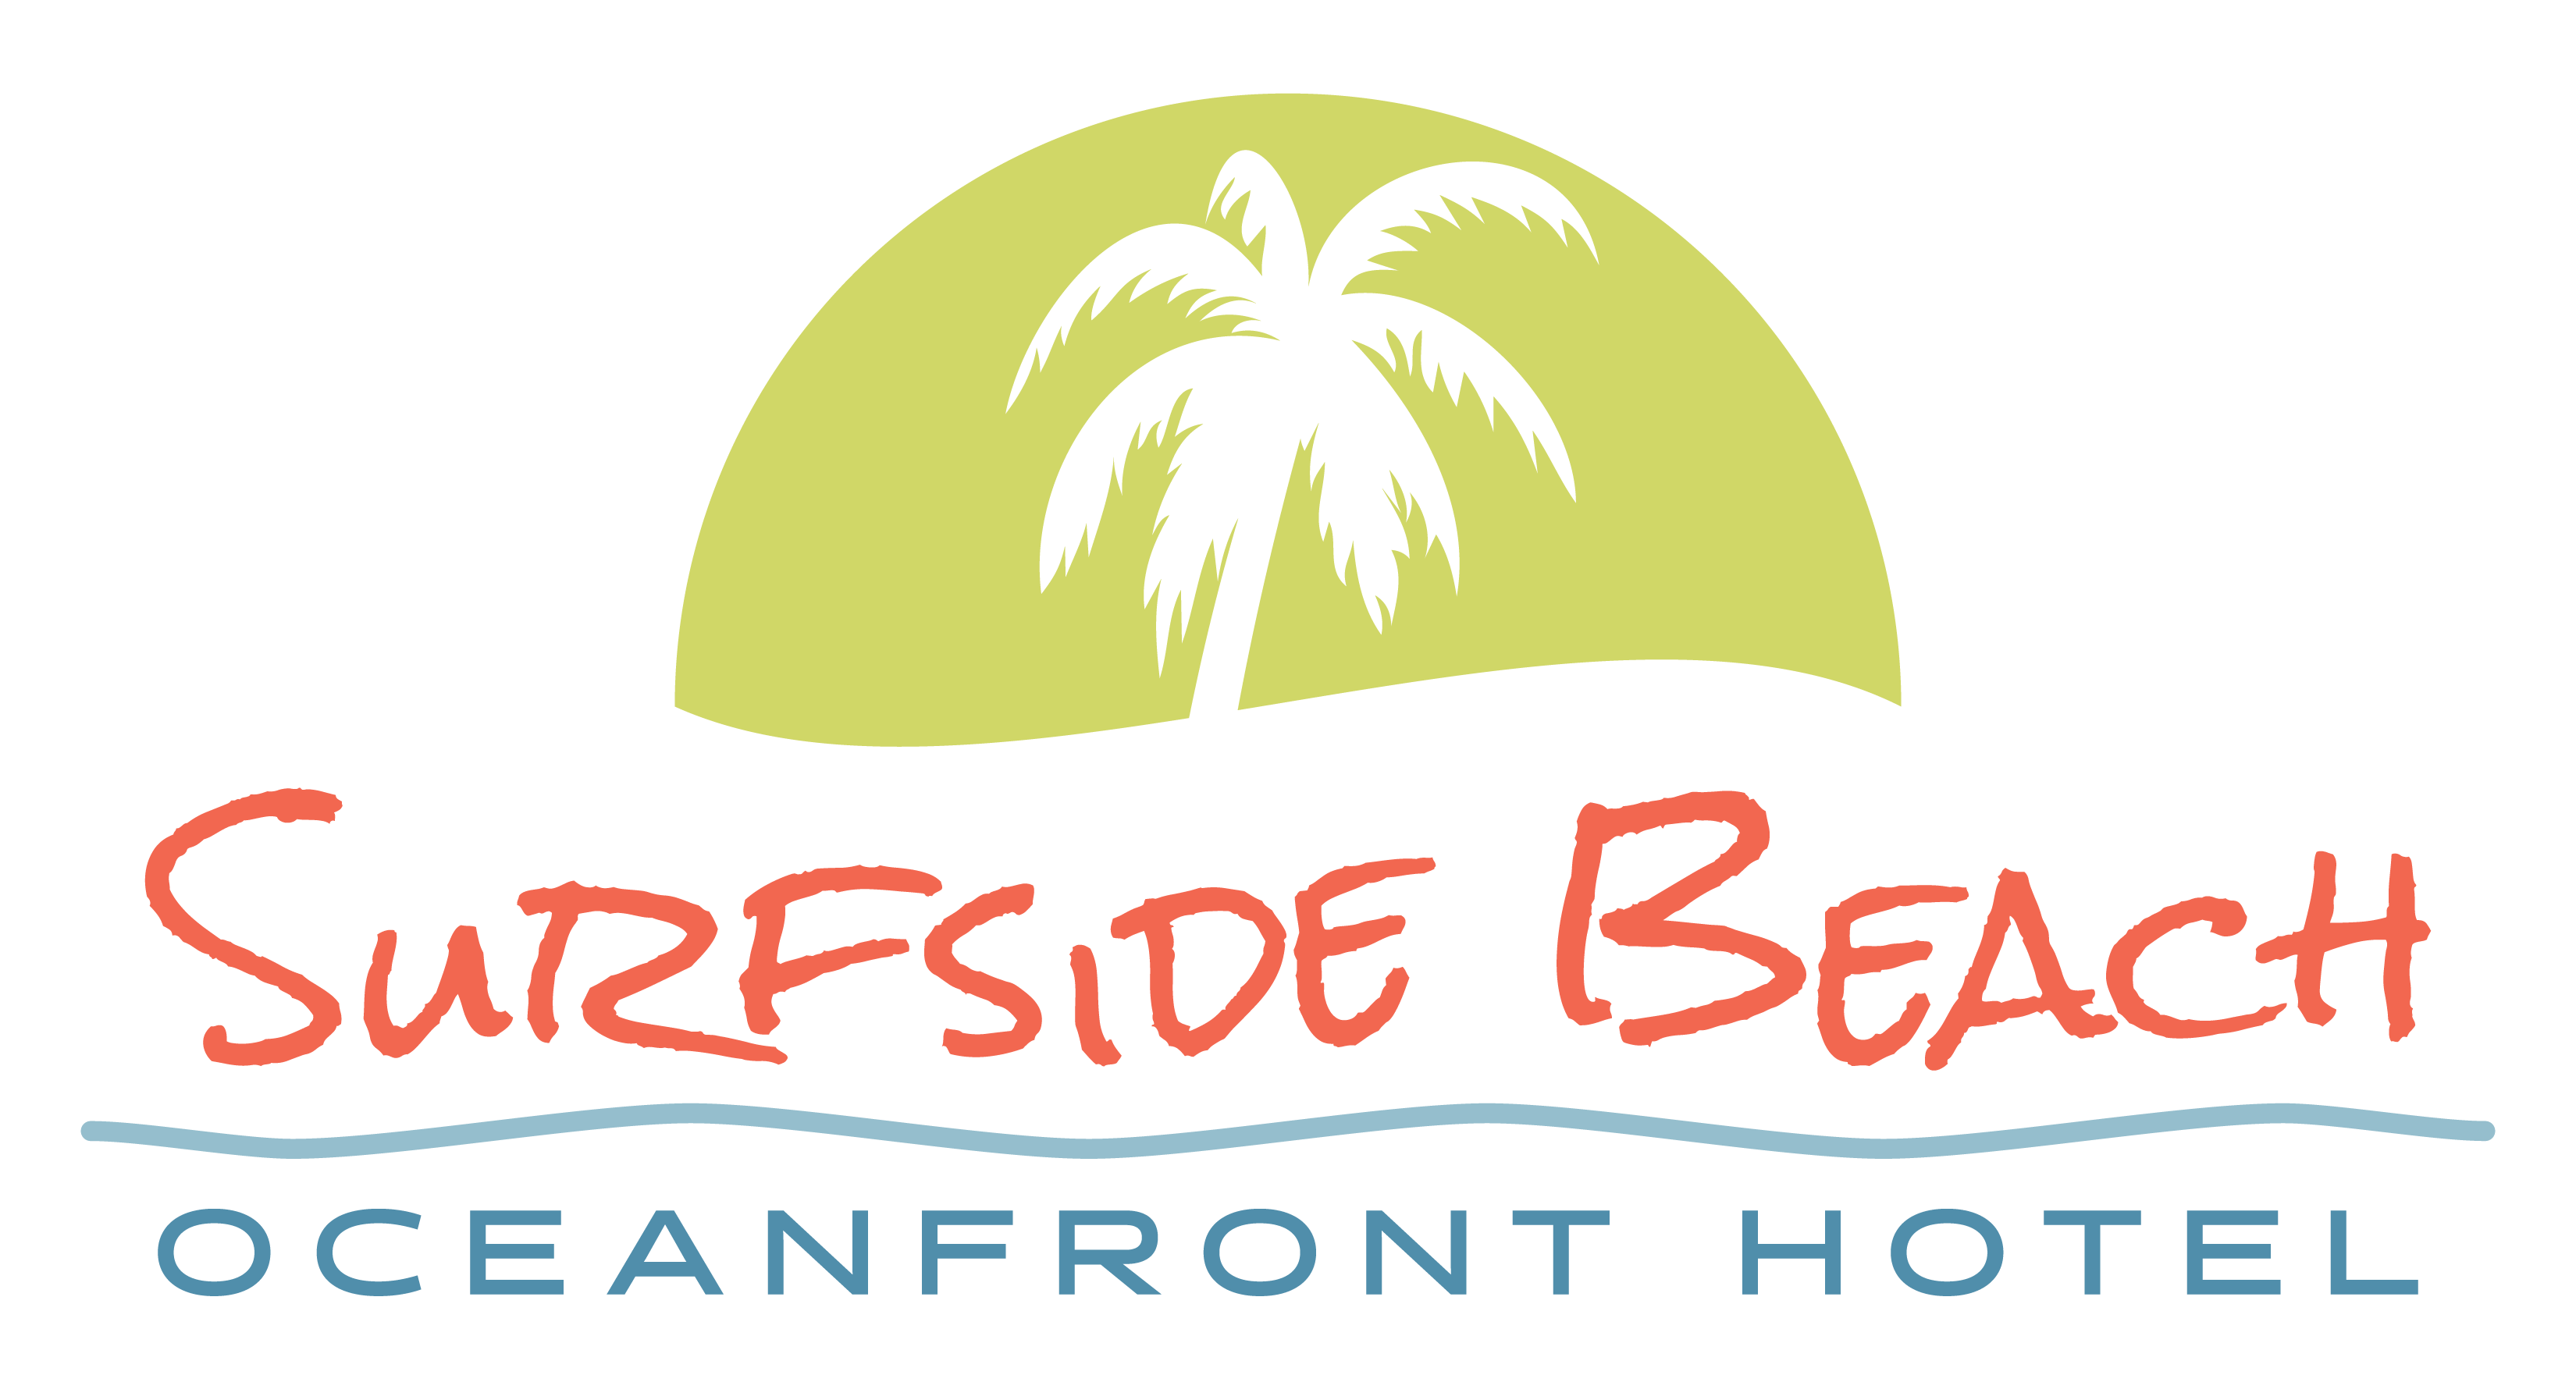 Surfside Beach Oceanfront Hotel logo